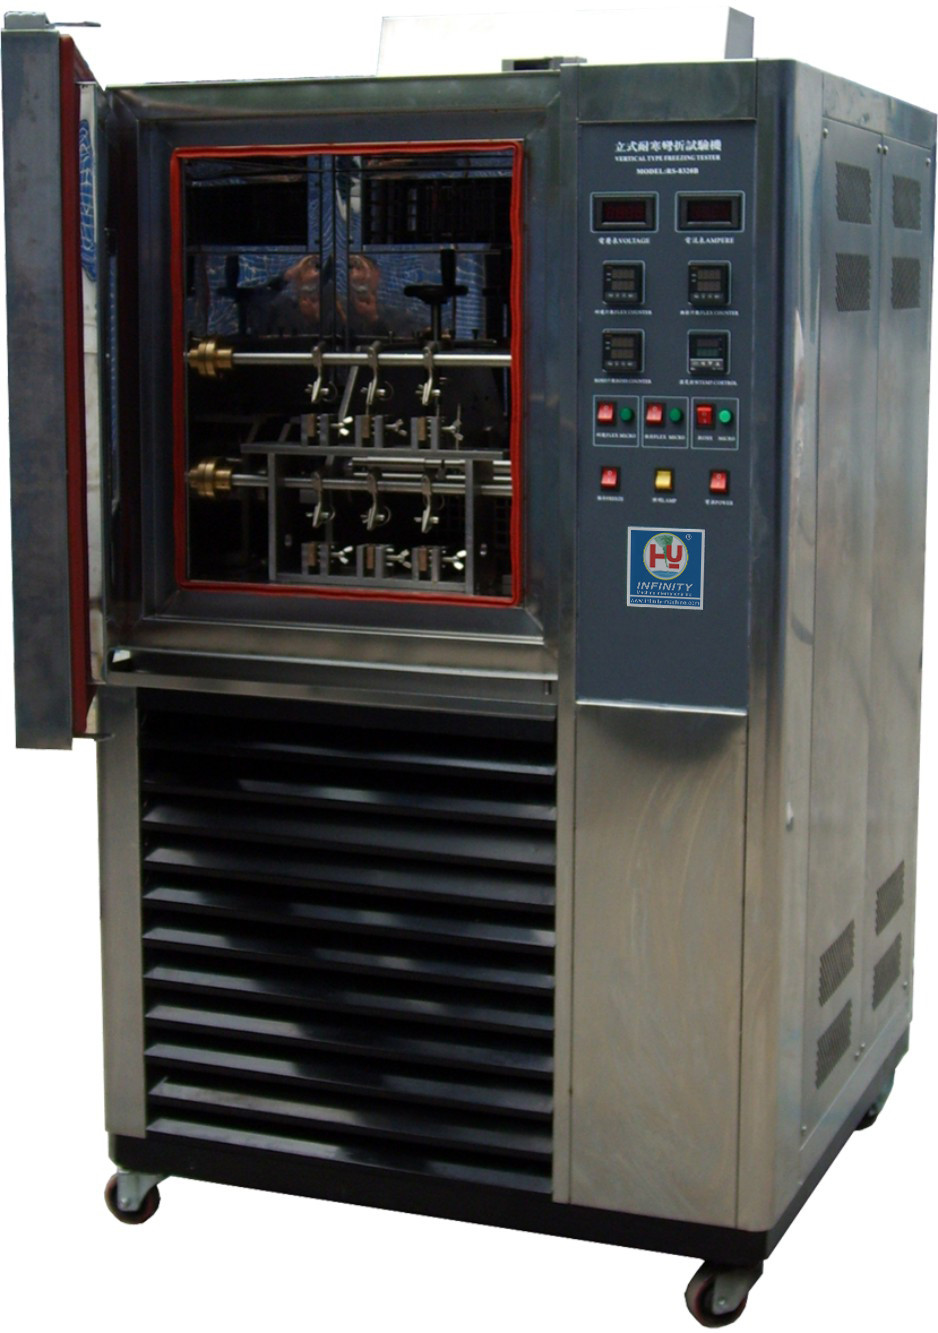 Pionowe urządzenie do testów środowiskowych na wytrzymałość Hardy ASTM D1790